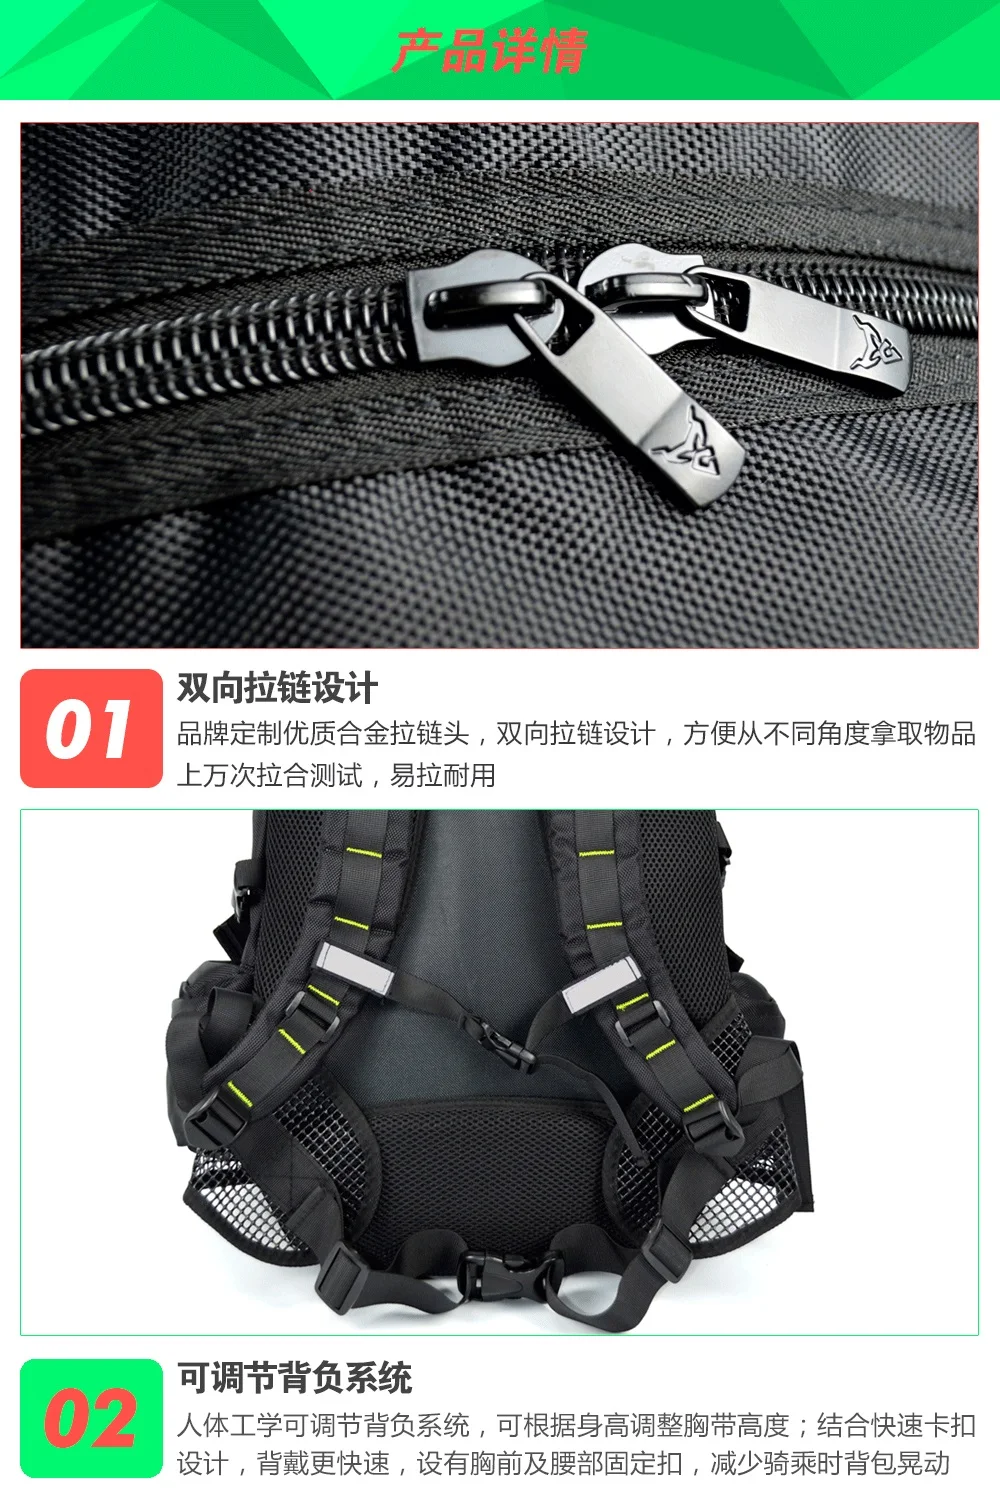 motocentric рюкзак Knight сумка для ноутбука водонепроницаемый мотоциклетный шлем защитная сумка рюкзак цвет 4